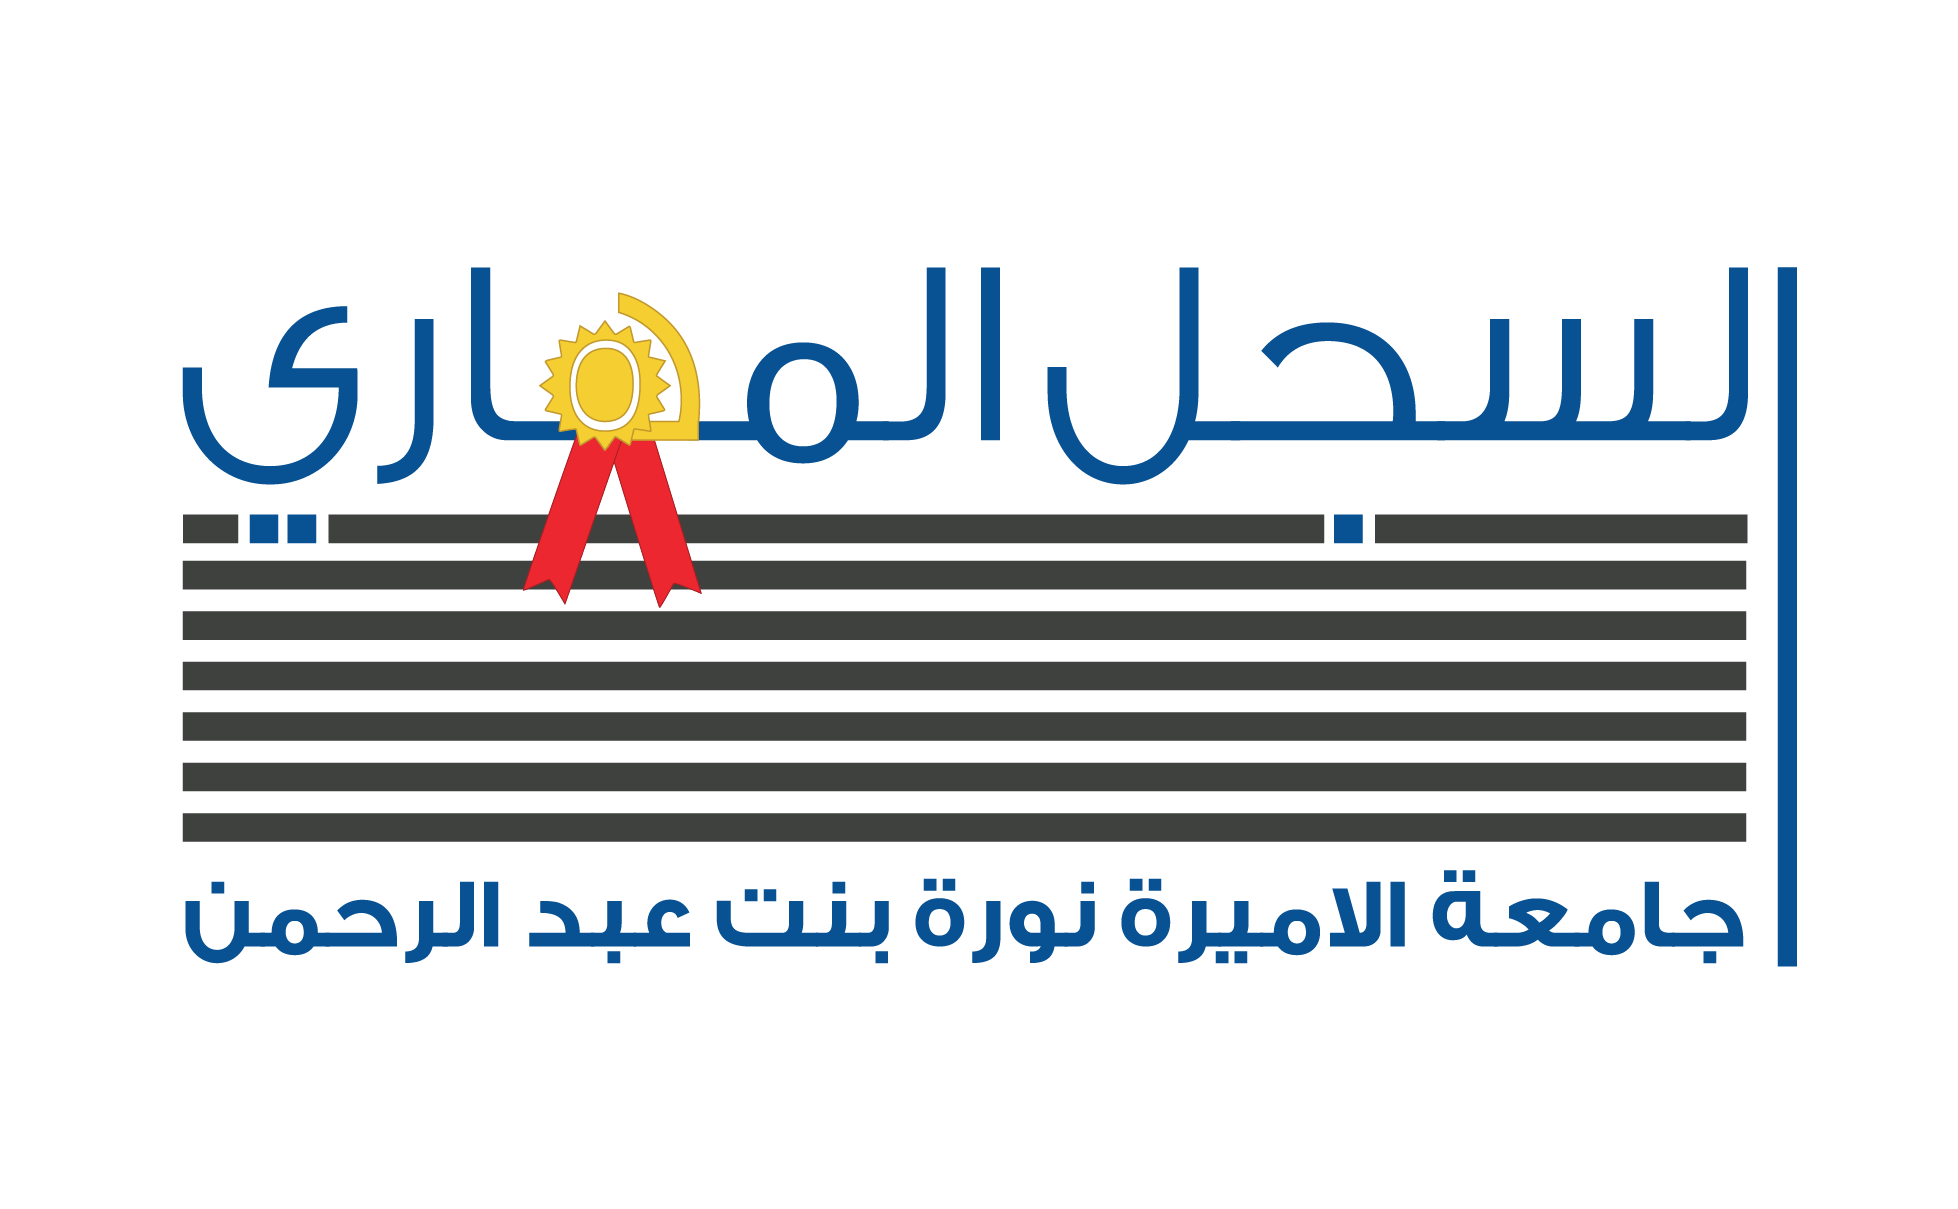 السجل المهارى لطالبات جامعة الأميرة نورة بنت عبدالرحمن